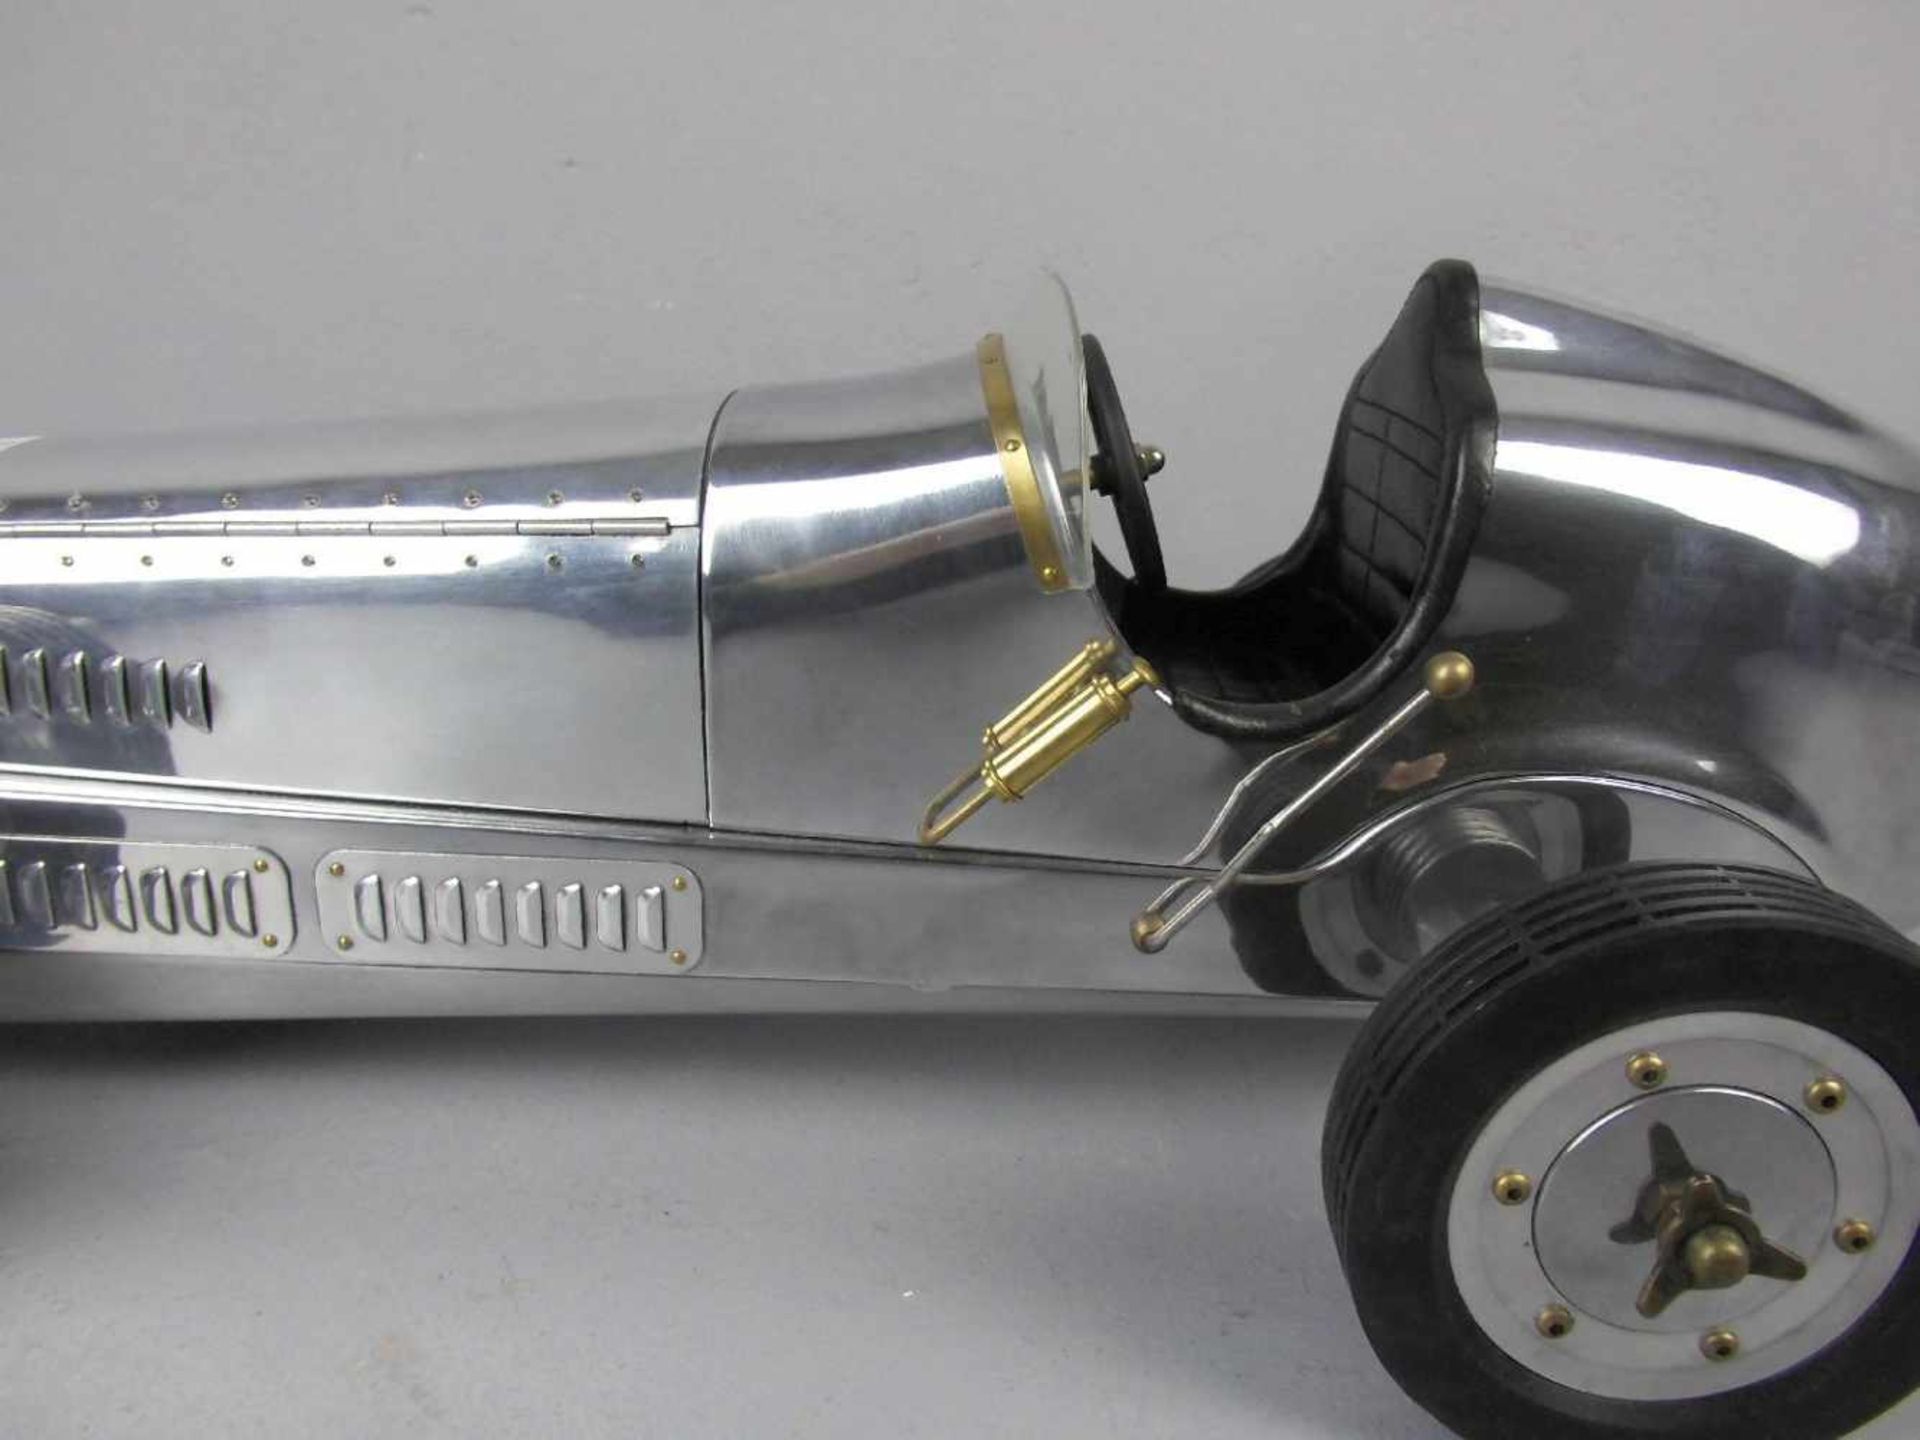 MODELL - AUTO: Mercedes Silberpfeil W 25 von 1934 / Grand Prix Model Car, unter dem Stand gemarkt " - Bild 6 aus 6